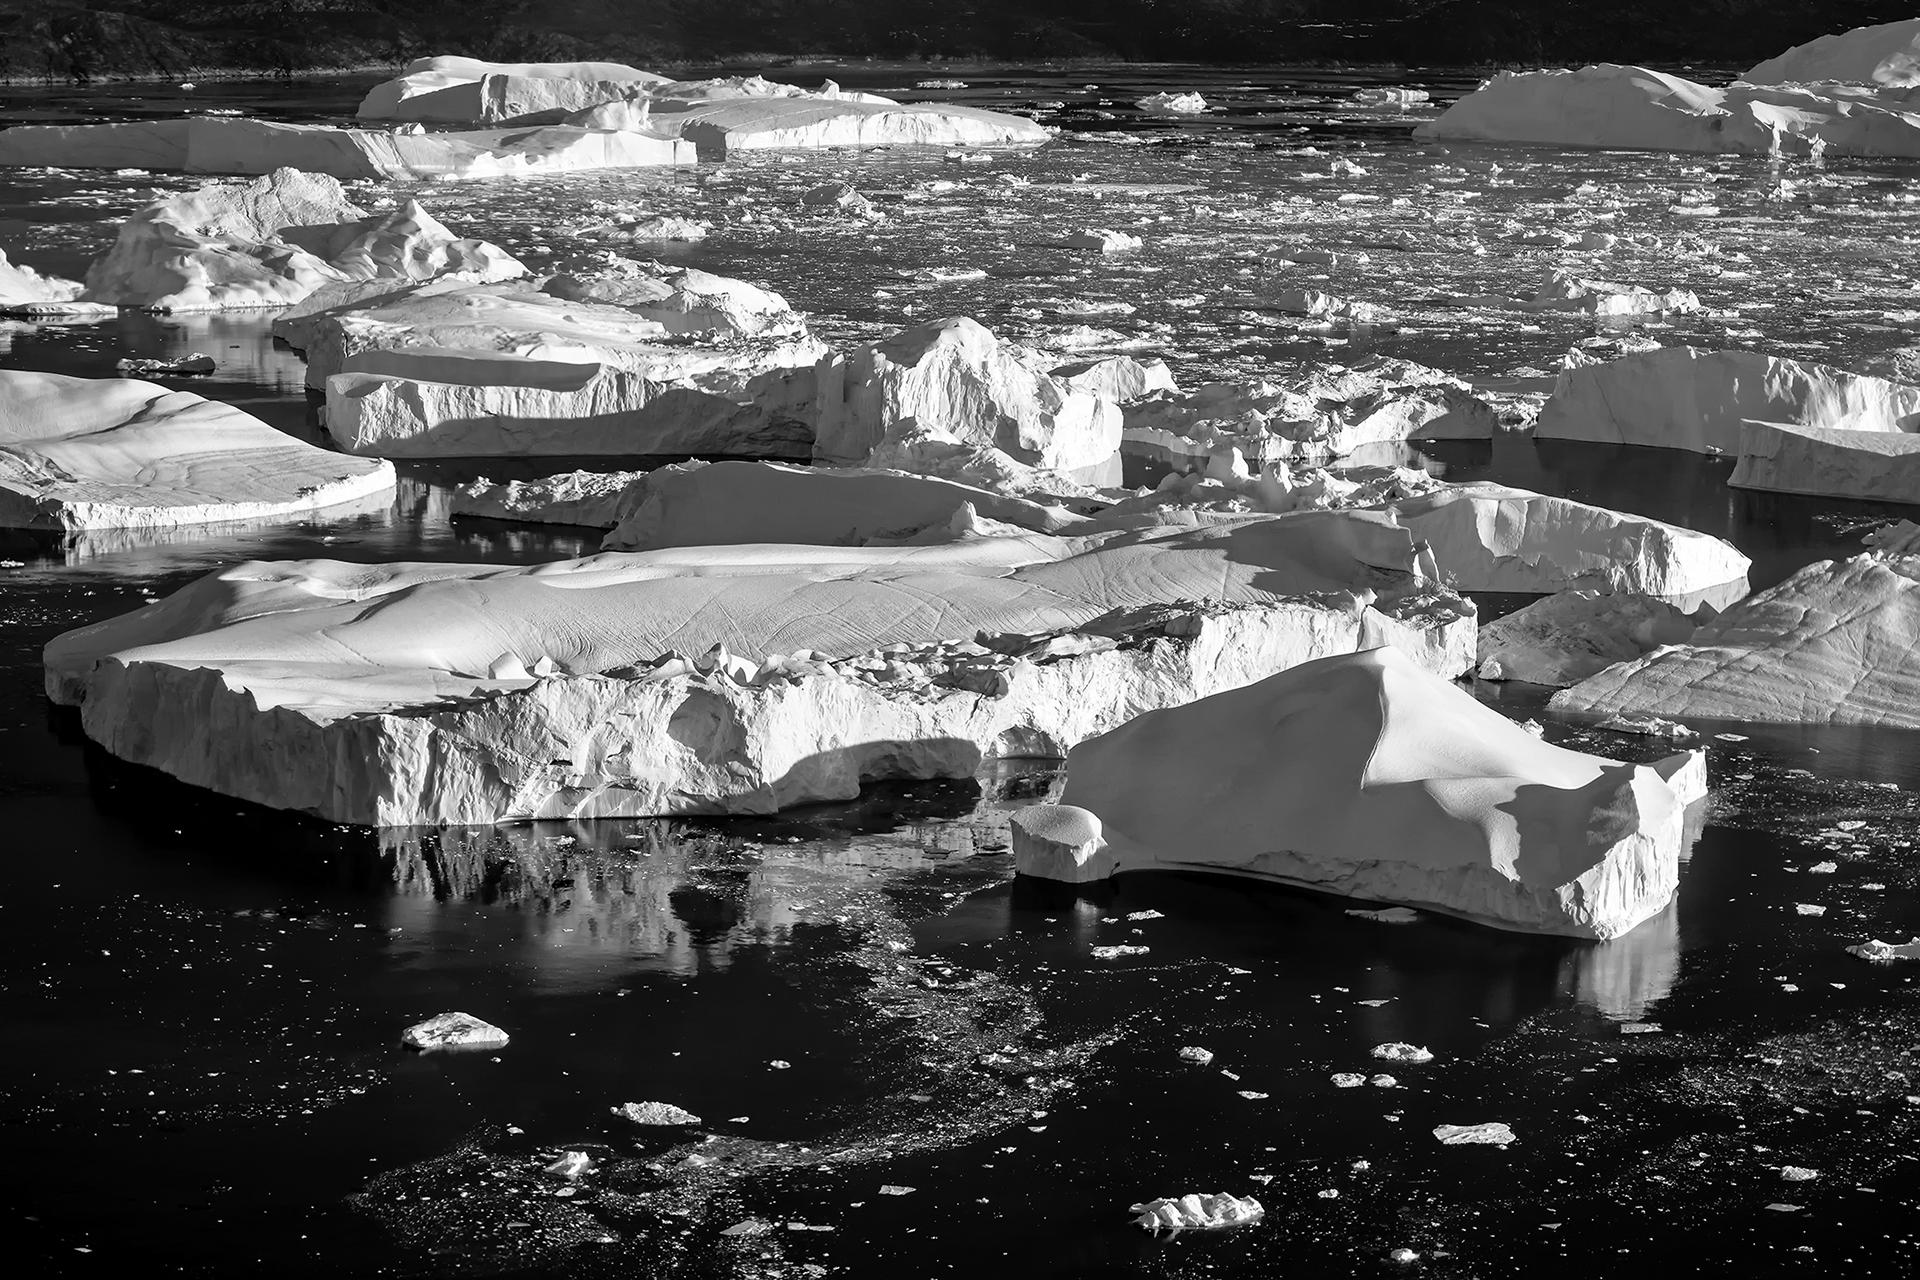 New York Photography Awards Winner - Over the iceberg (black and white)